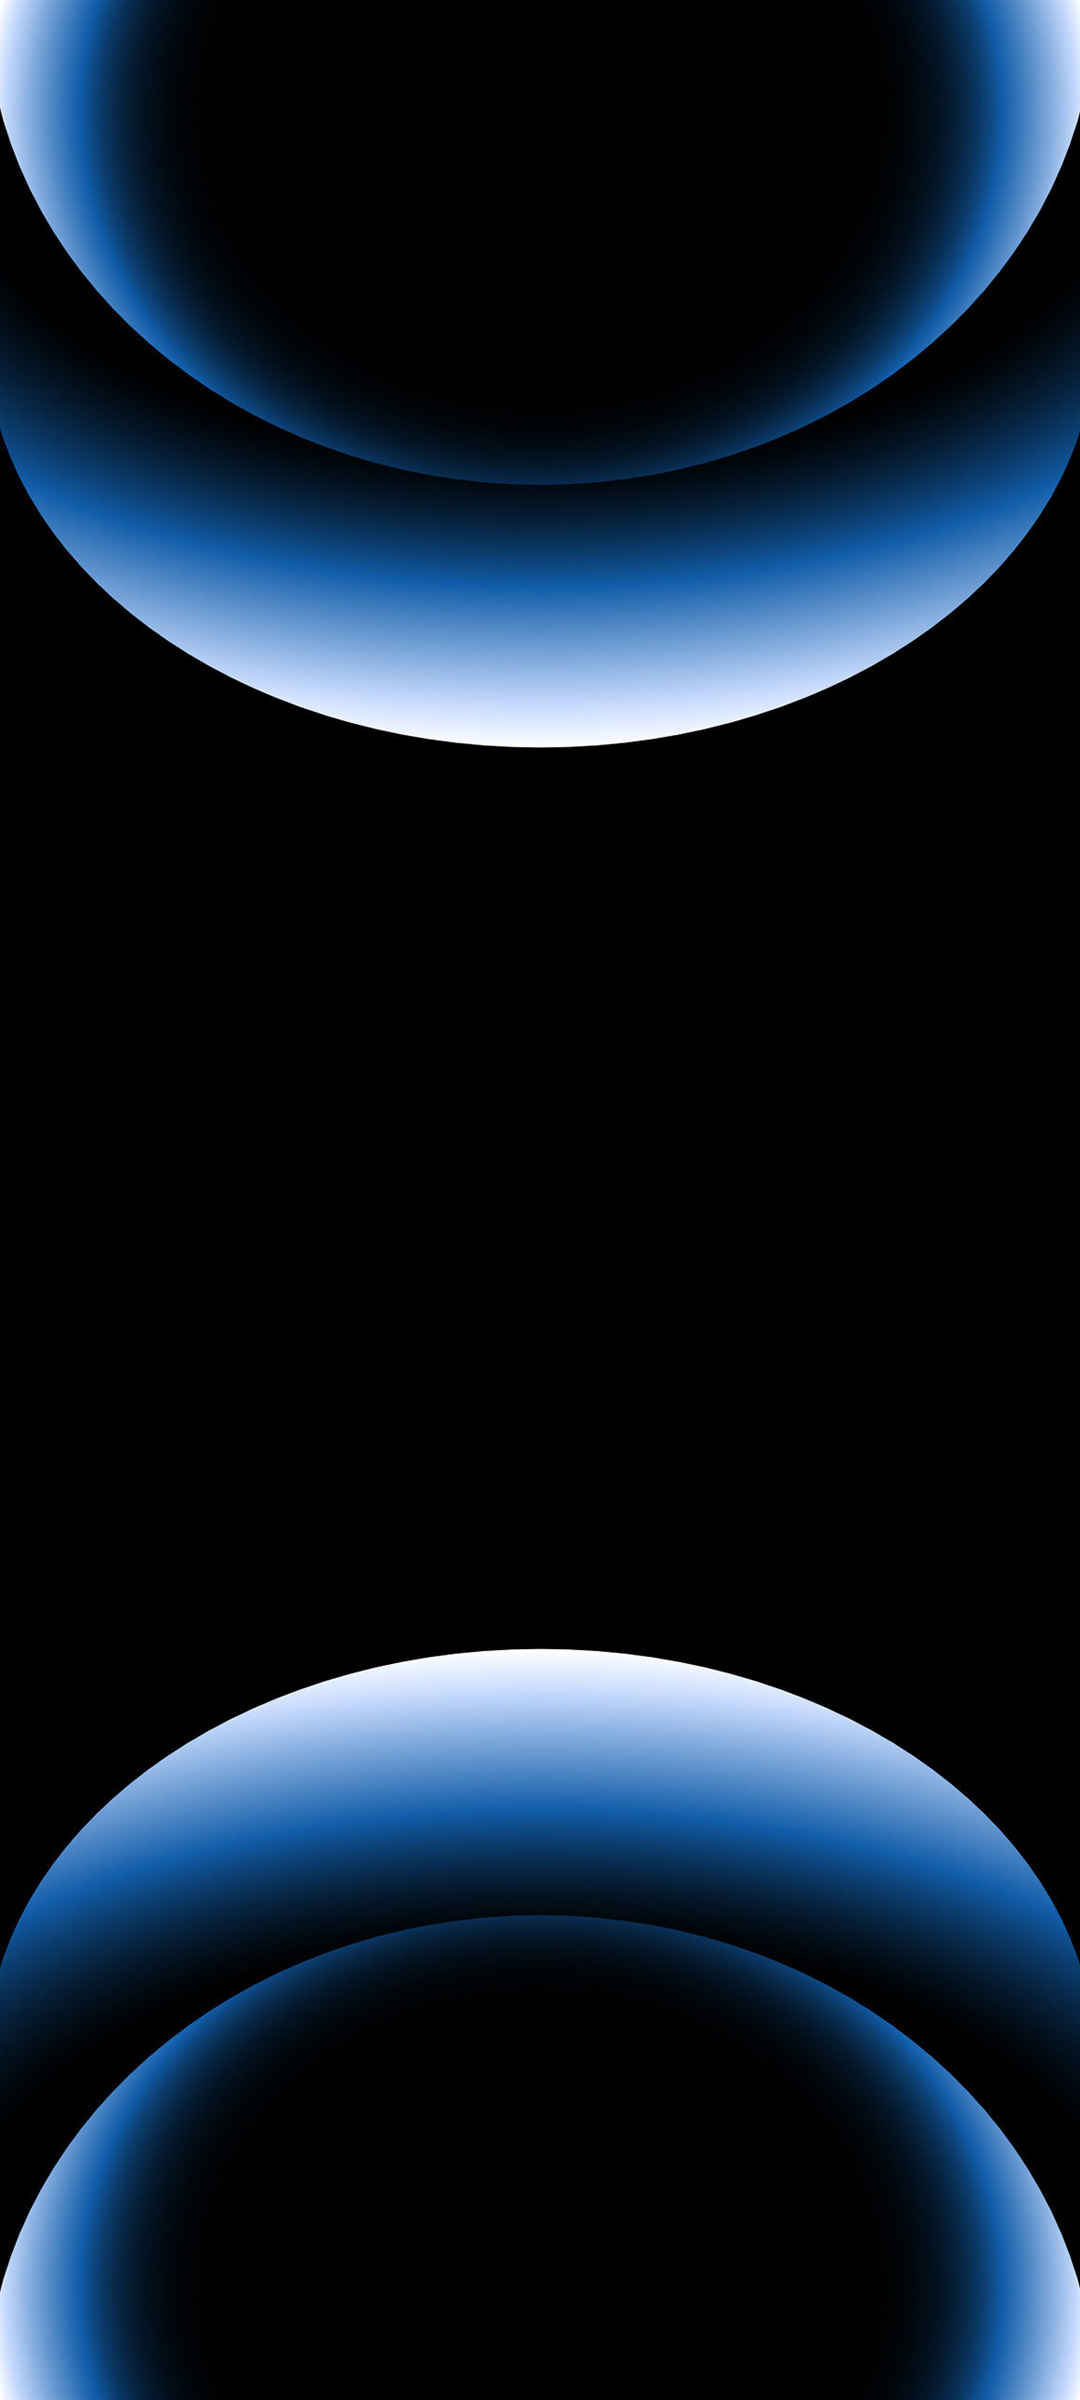 苹果 蓝色 创意 色彩 黑色背景 手机壁纸